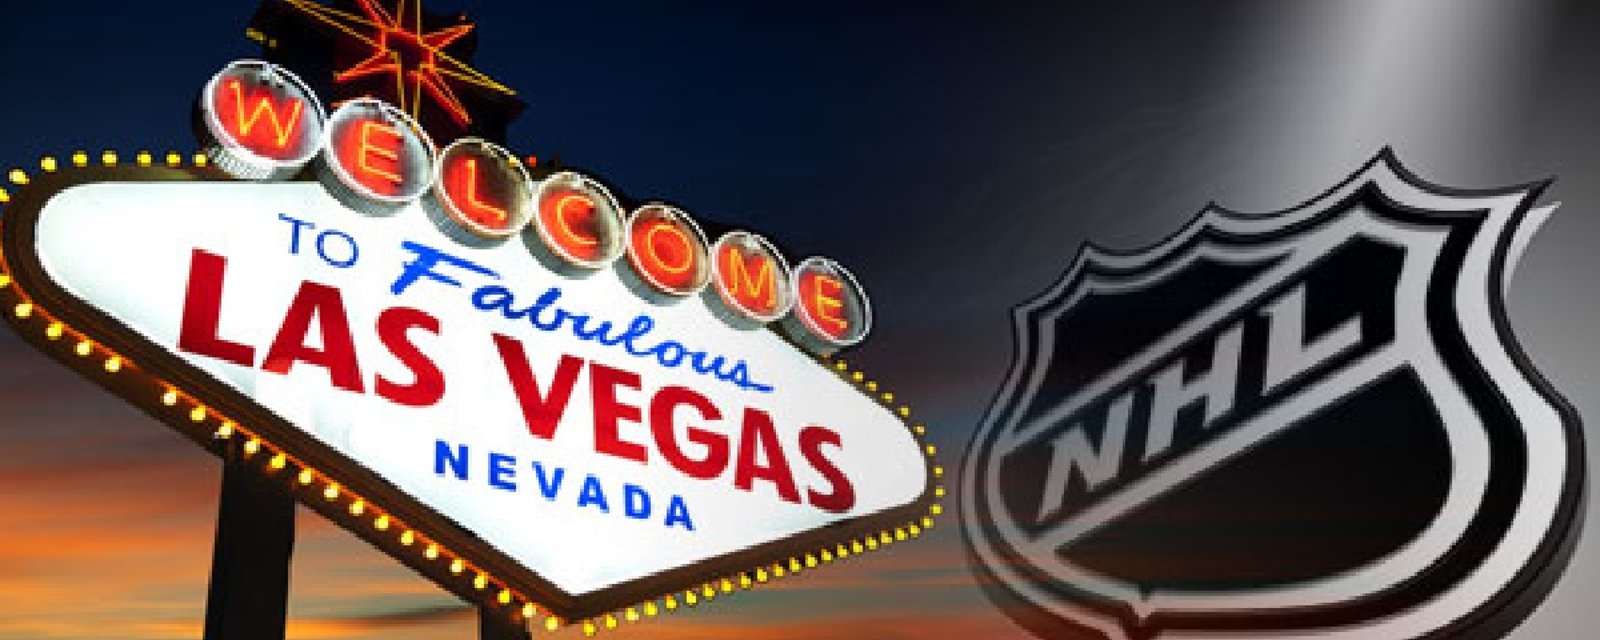 Un insider prétend connaitre le nom de l'équipe de Las Vegas!